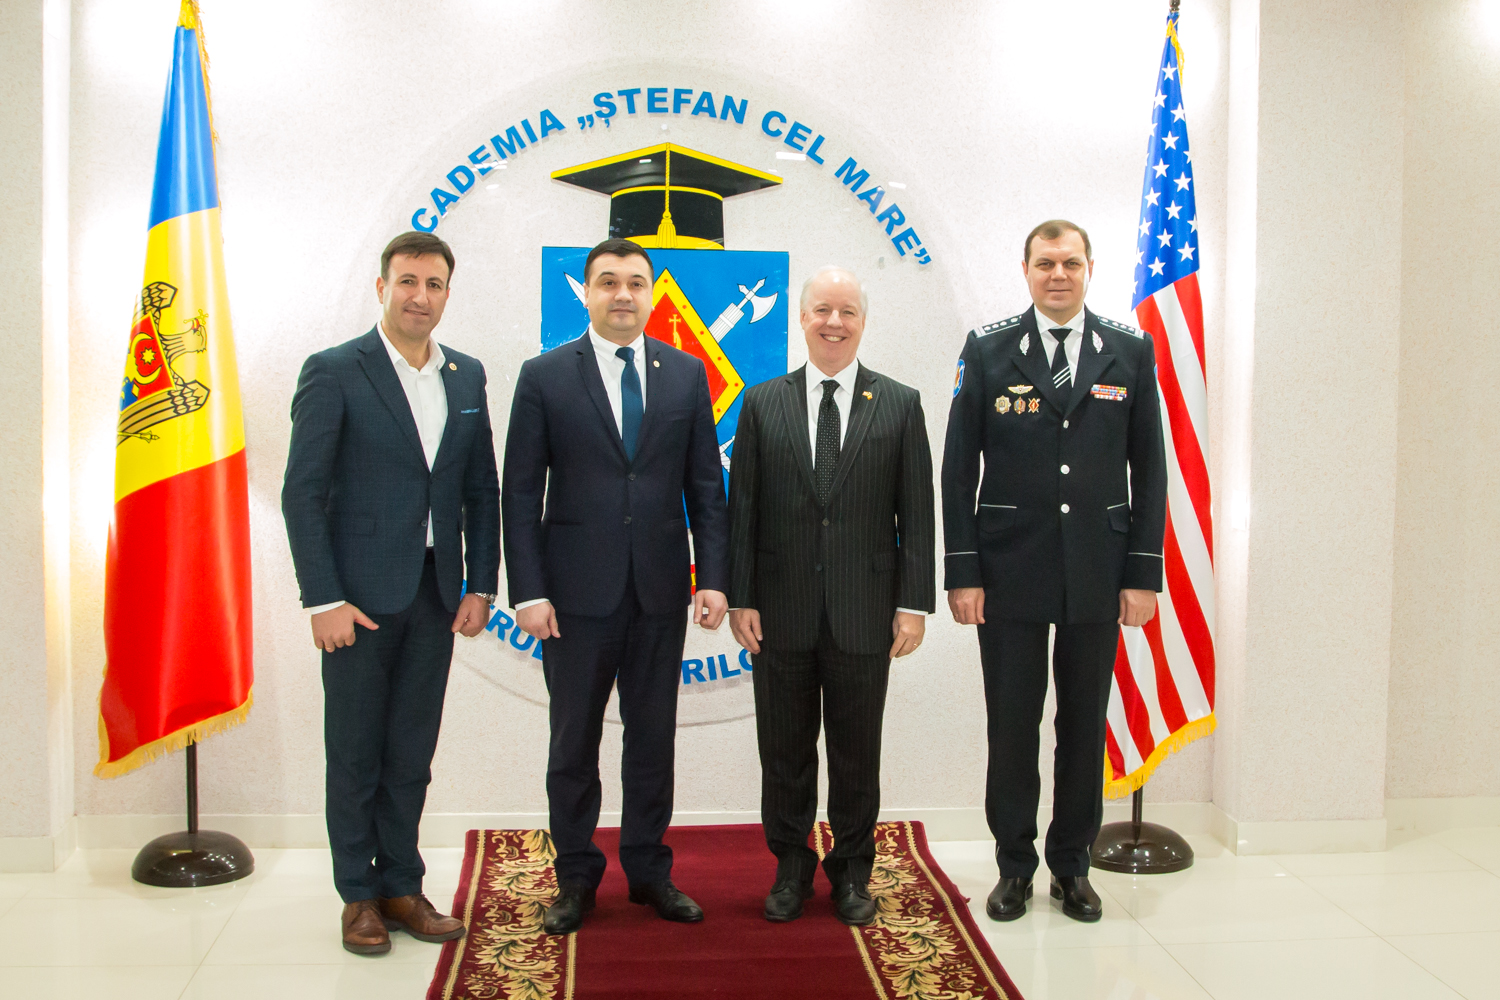 Американские морпехи обучают молдавских спецназовцев борьбе с терроризмом. Глава МВД и посол США посетили учебный центр